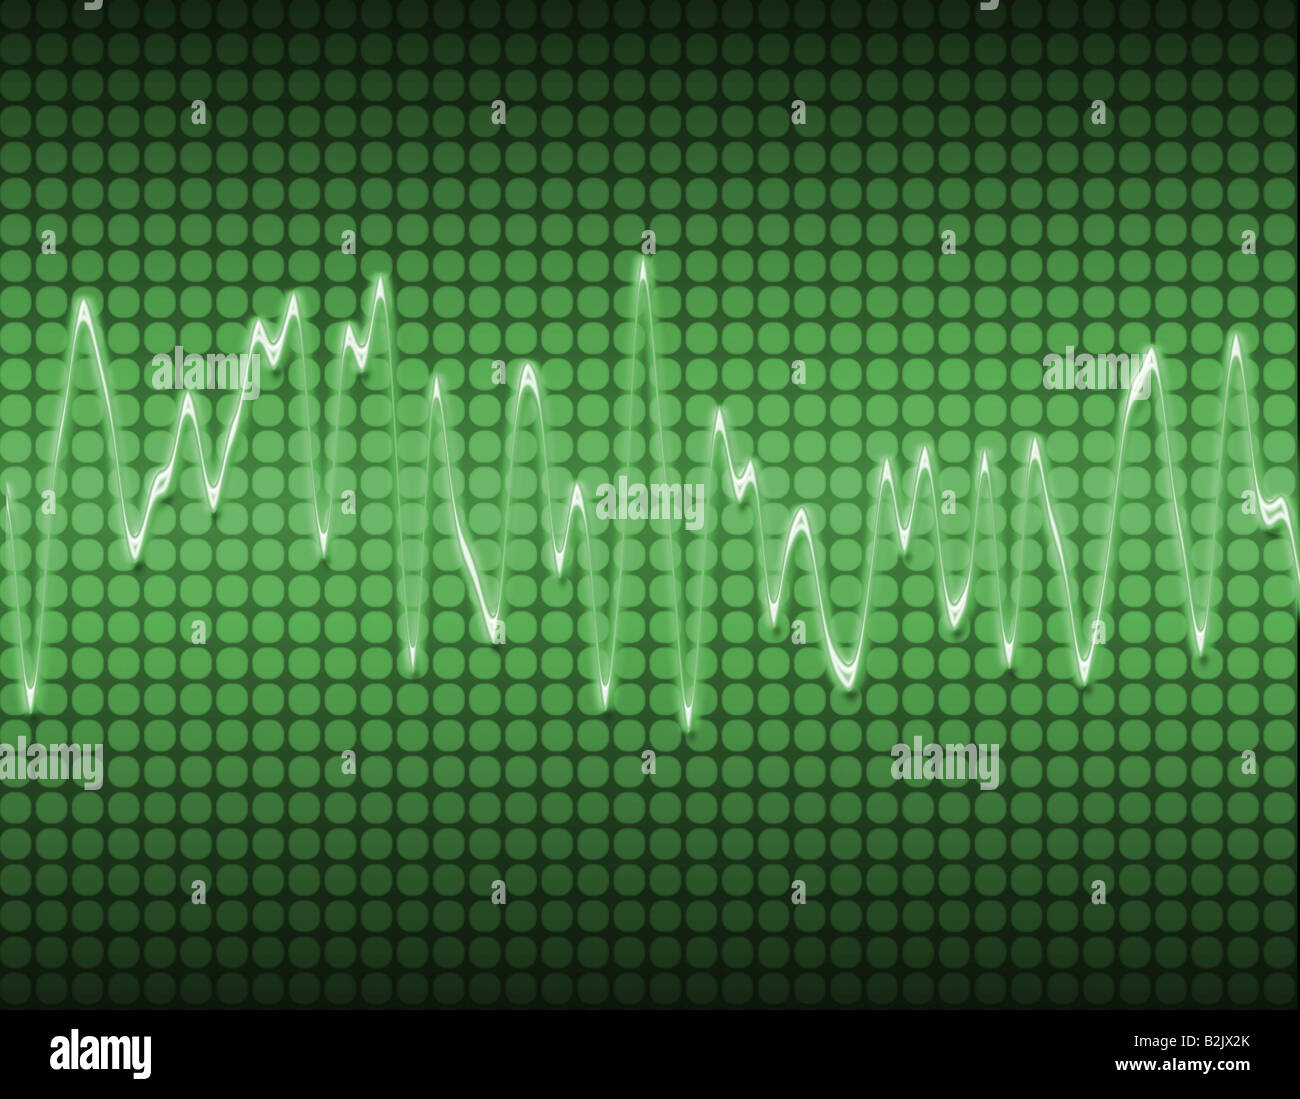 Grande image d'un système électronique sine wave son ou audio en vert Banque D'Images